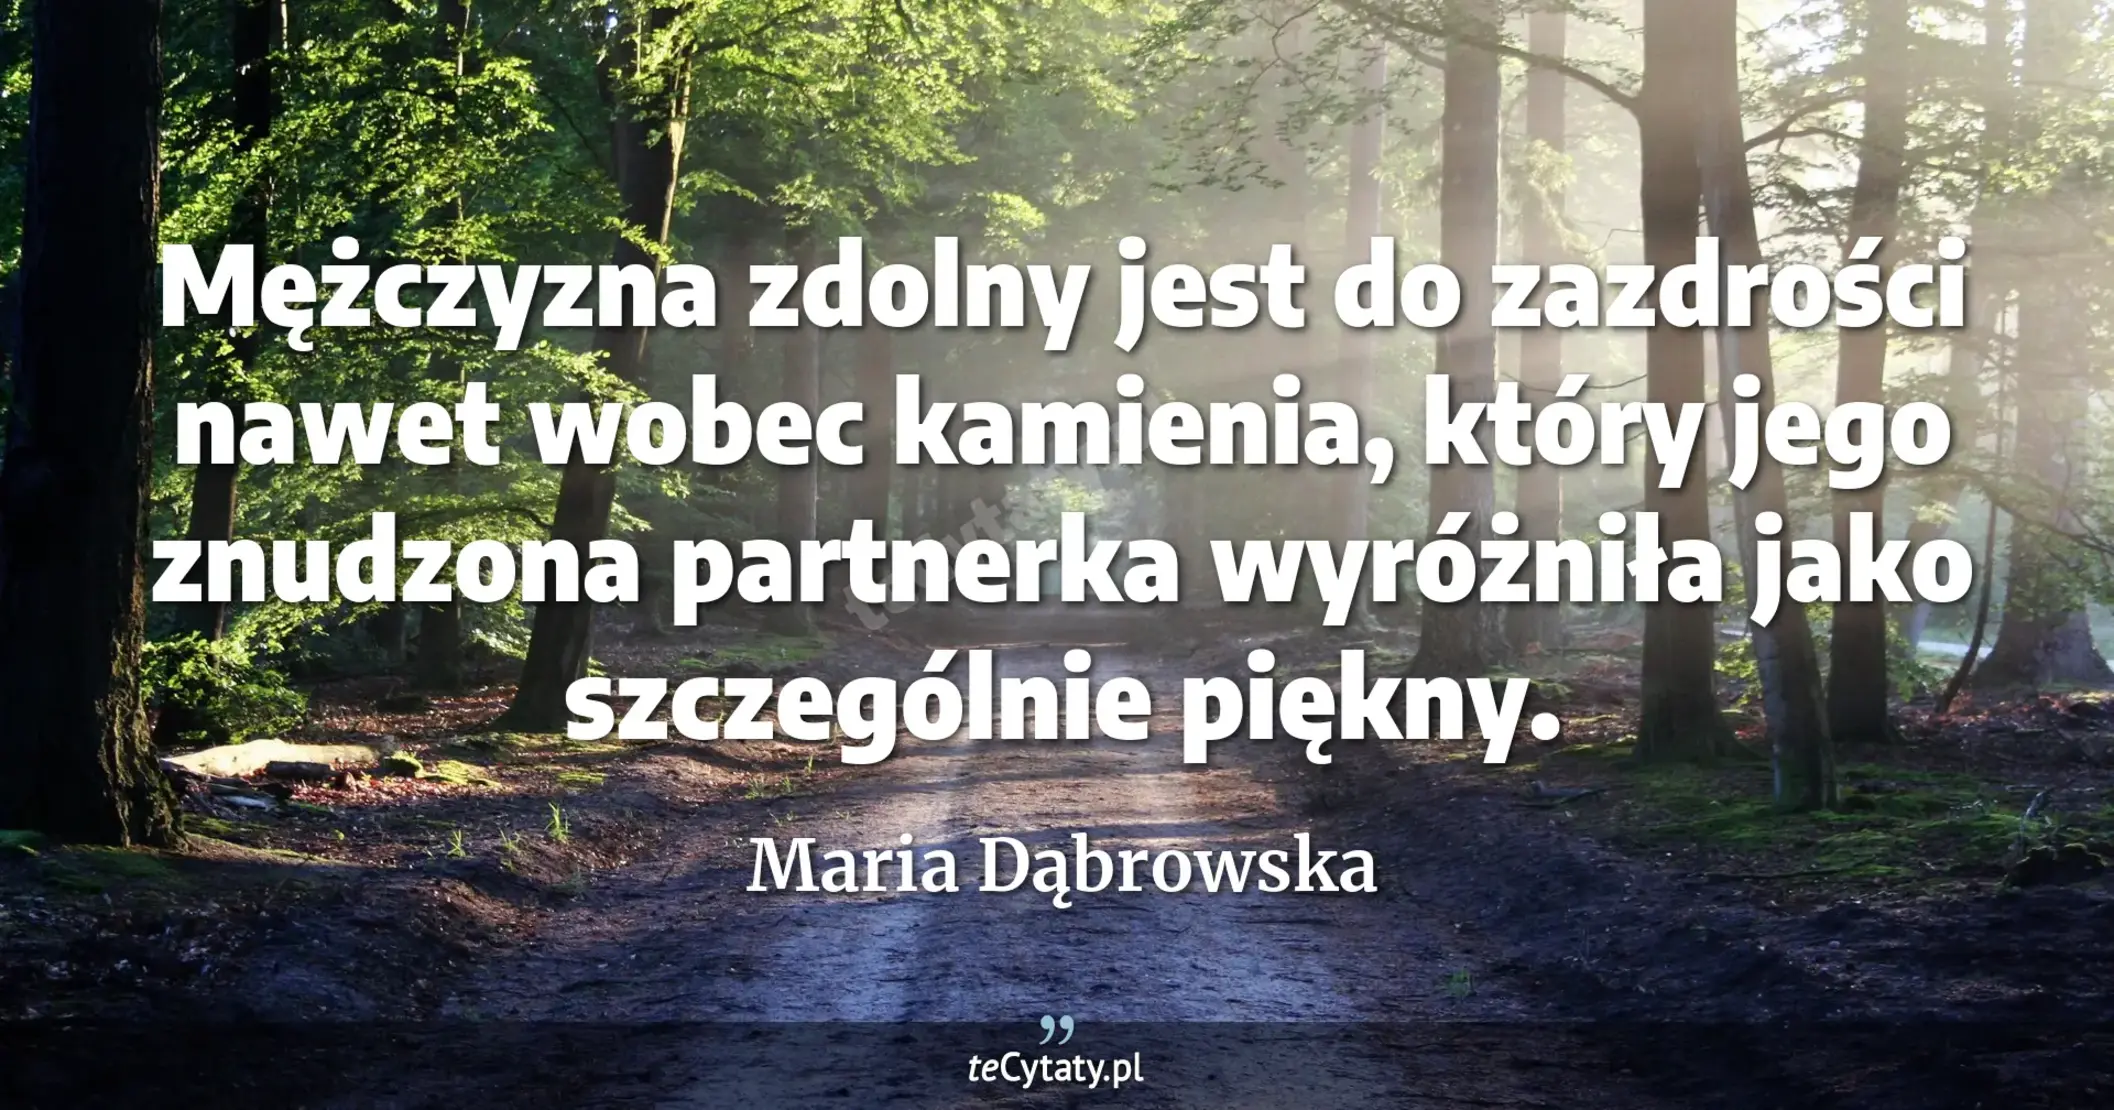 Mężczyzna zdolny jest do zazdrości nawet wobec kamienia, który jego znudzona partnerka wyróżniła jako szczególnie piękny. - Maria Dąbrowska